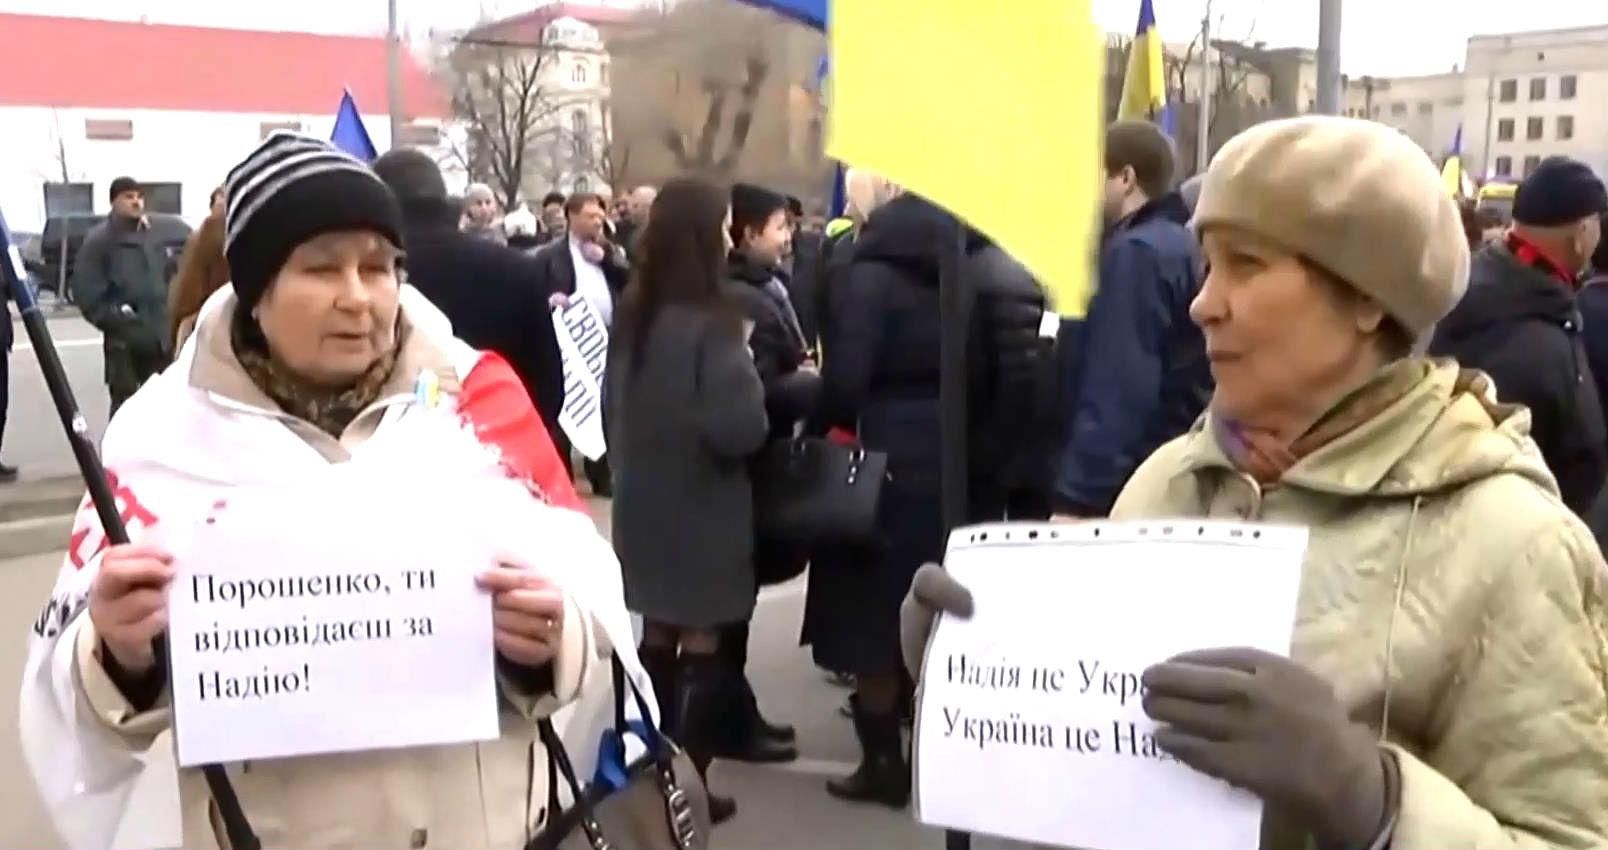 Порошенко, ти відповідаєш за Савченко, — мітингарі під російським посольством